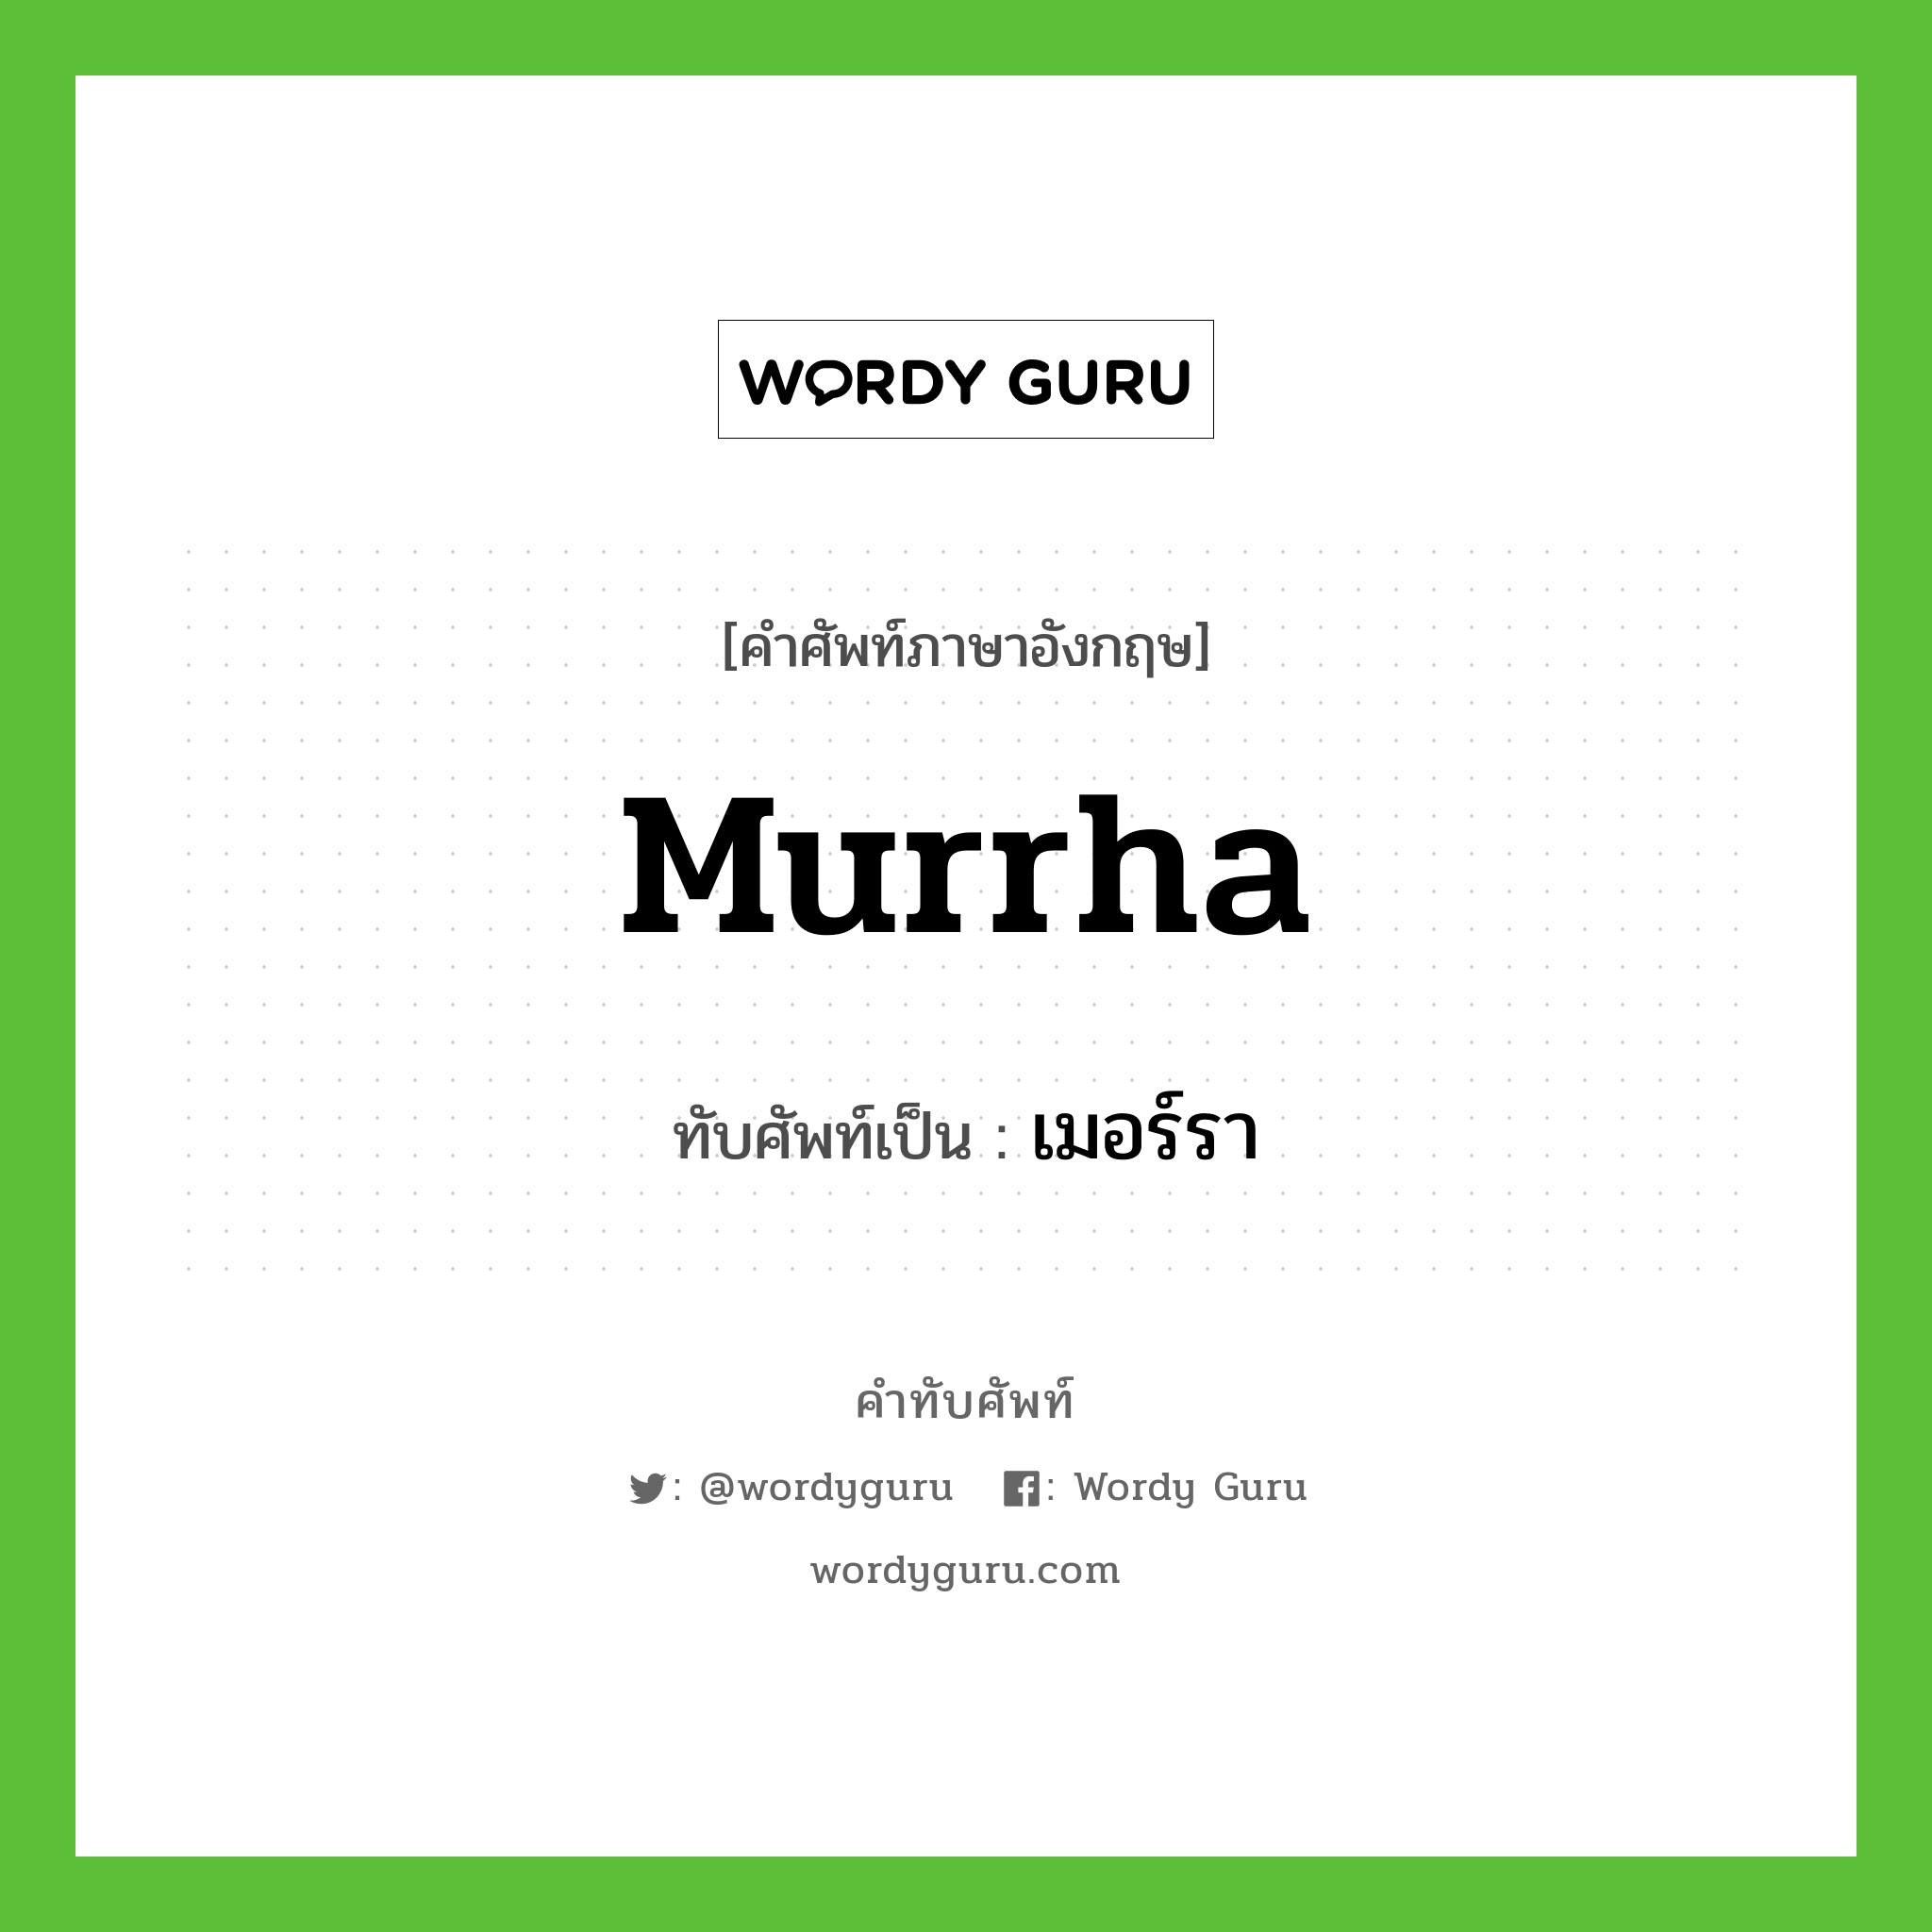 murrha เขียนเป็นคำไทยว่าอะไร?, คำศัพท์ภาษาอังกฤษ murrha ทับศัพท์เป็น เมอร์รา